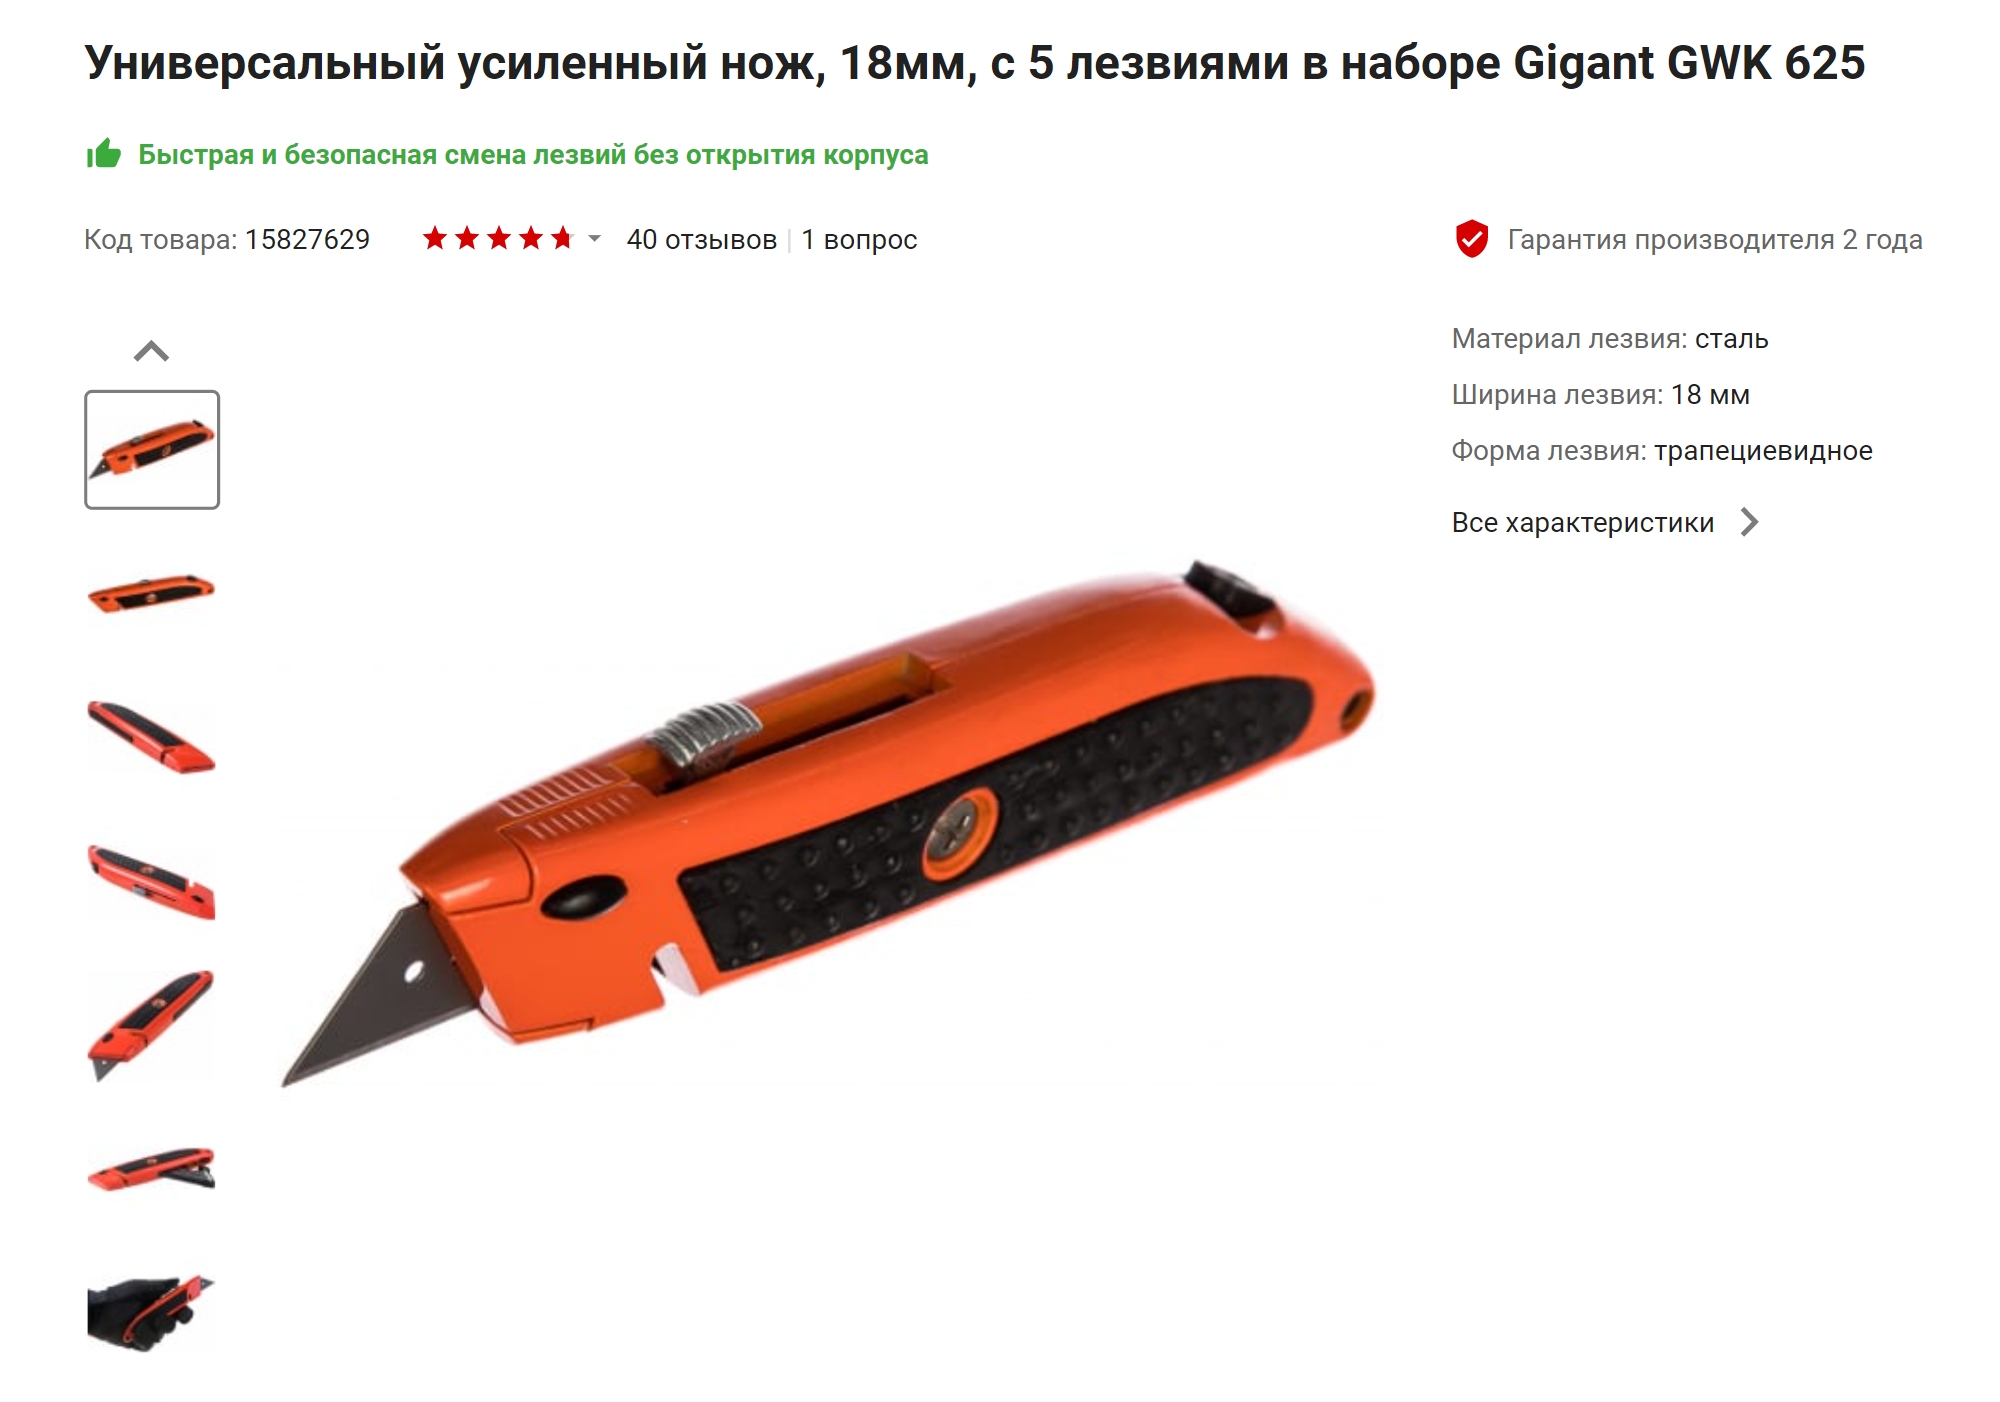 Такой нож пригодится для того, чтобы довести напечатанный предмет до идеала. Источник: vseinstrumenti.ru